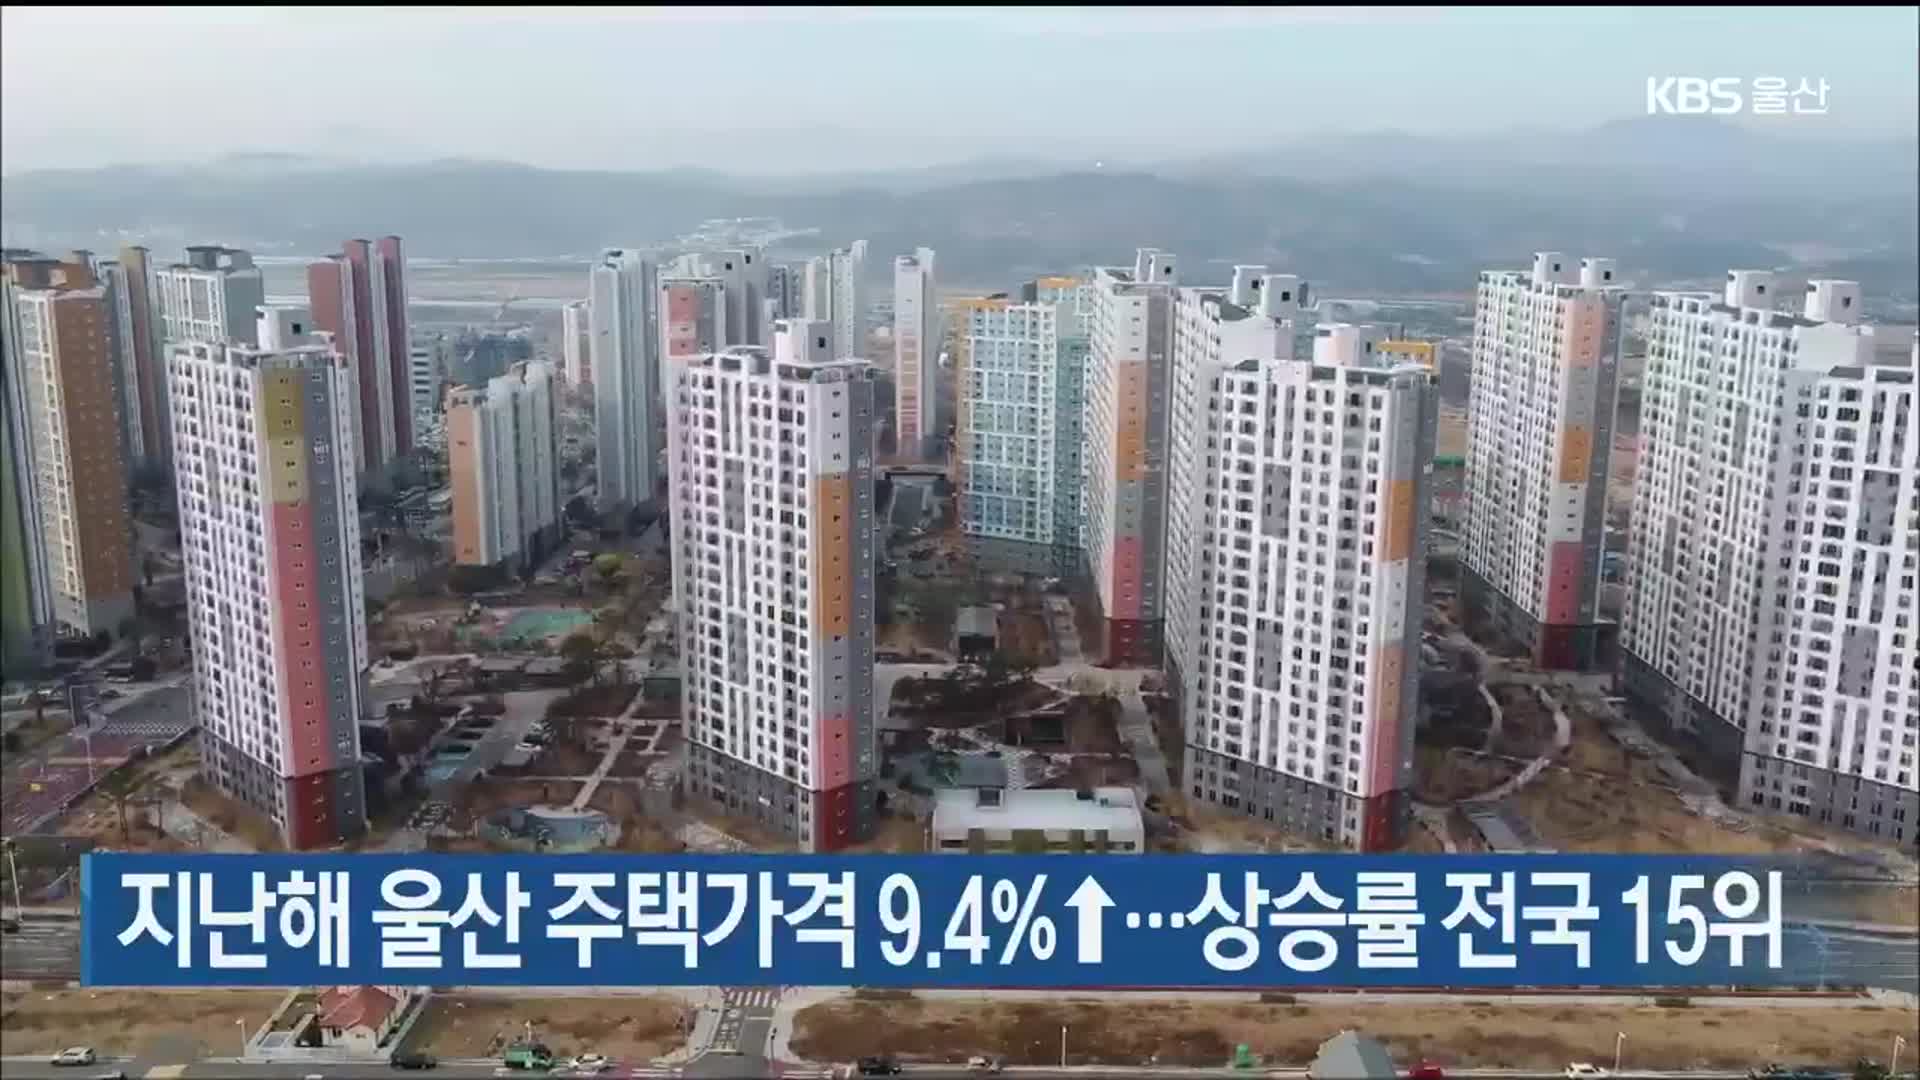 지난해 울산 주택가격 9.4%↑…상승률 전국 15위